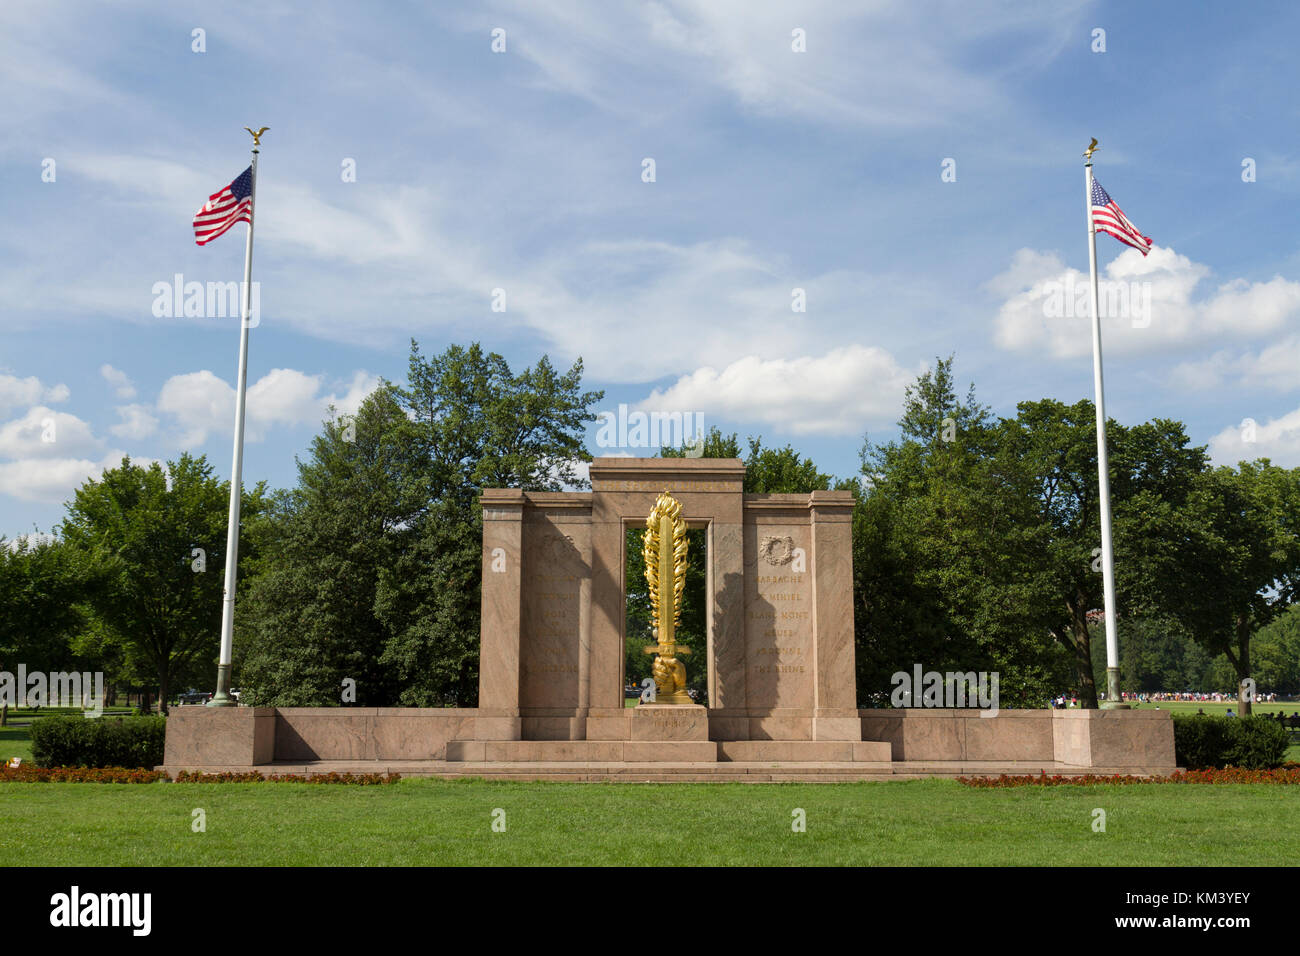 La deuxième division Memorial, President's Park, entre la 17e rue nord-ouest et Constitution Avenue à Washington, DC, United States. Banque D'Images